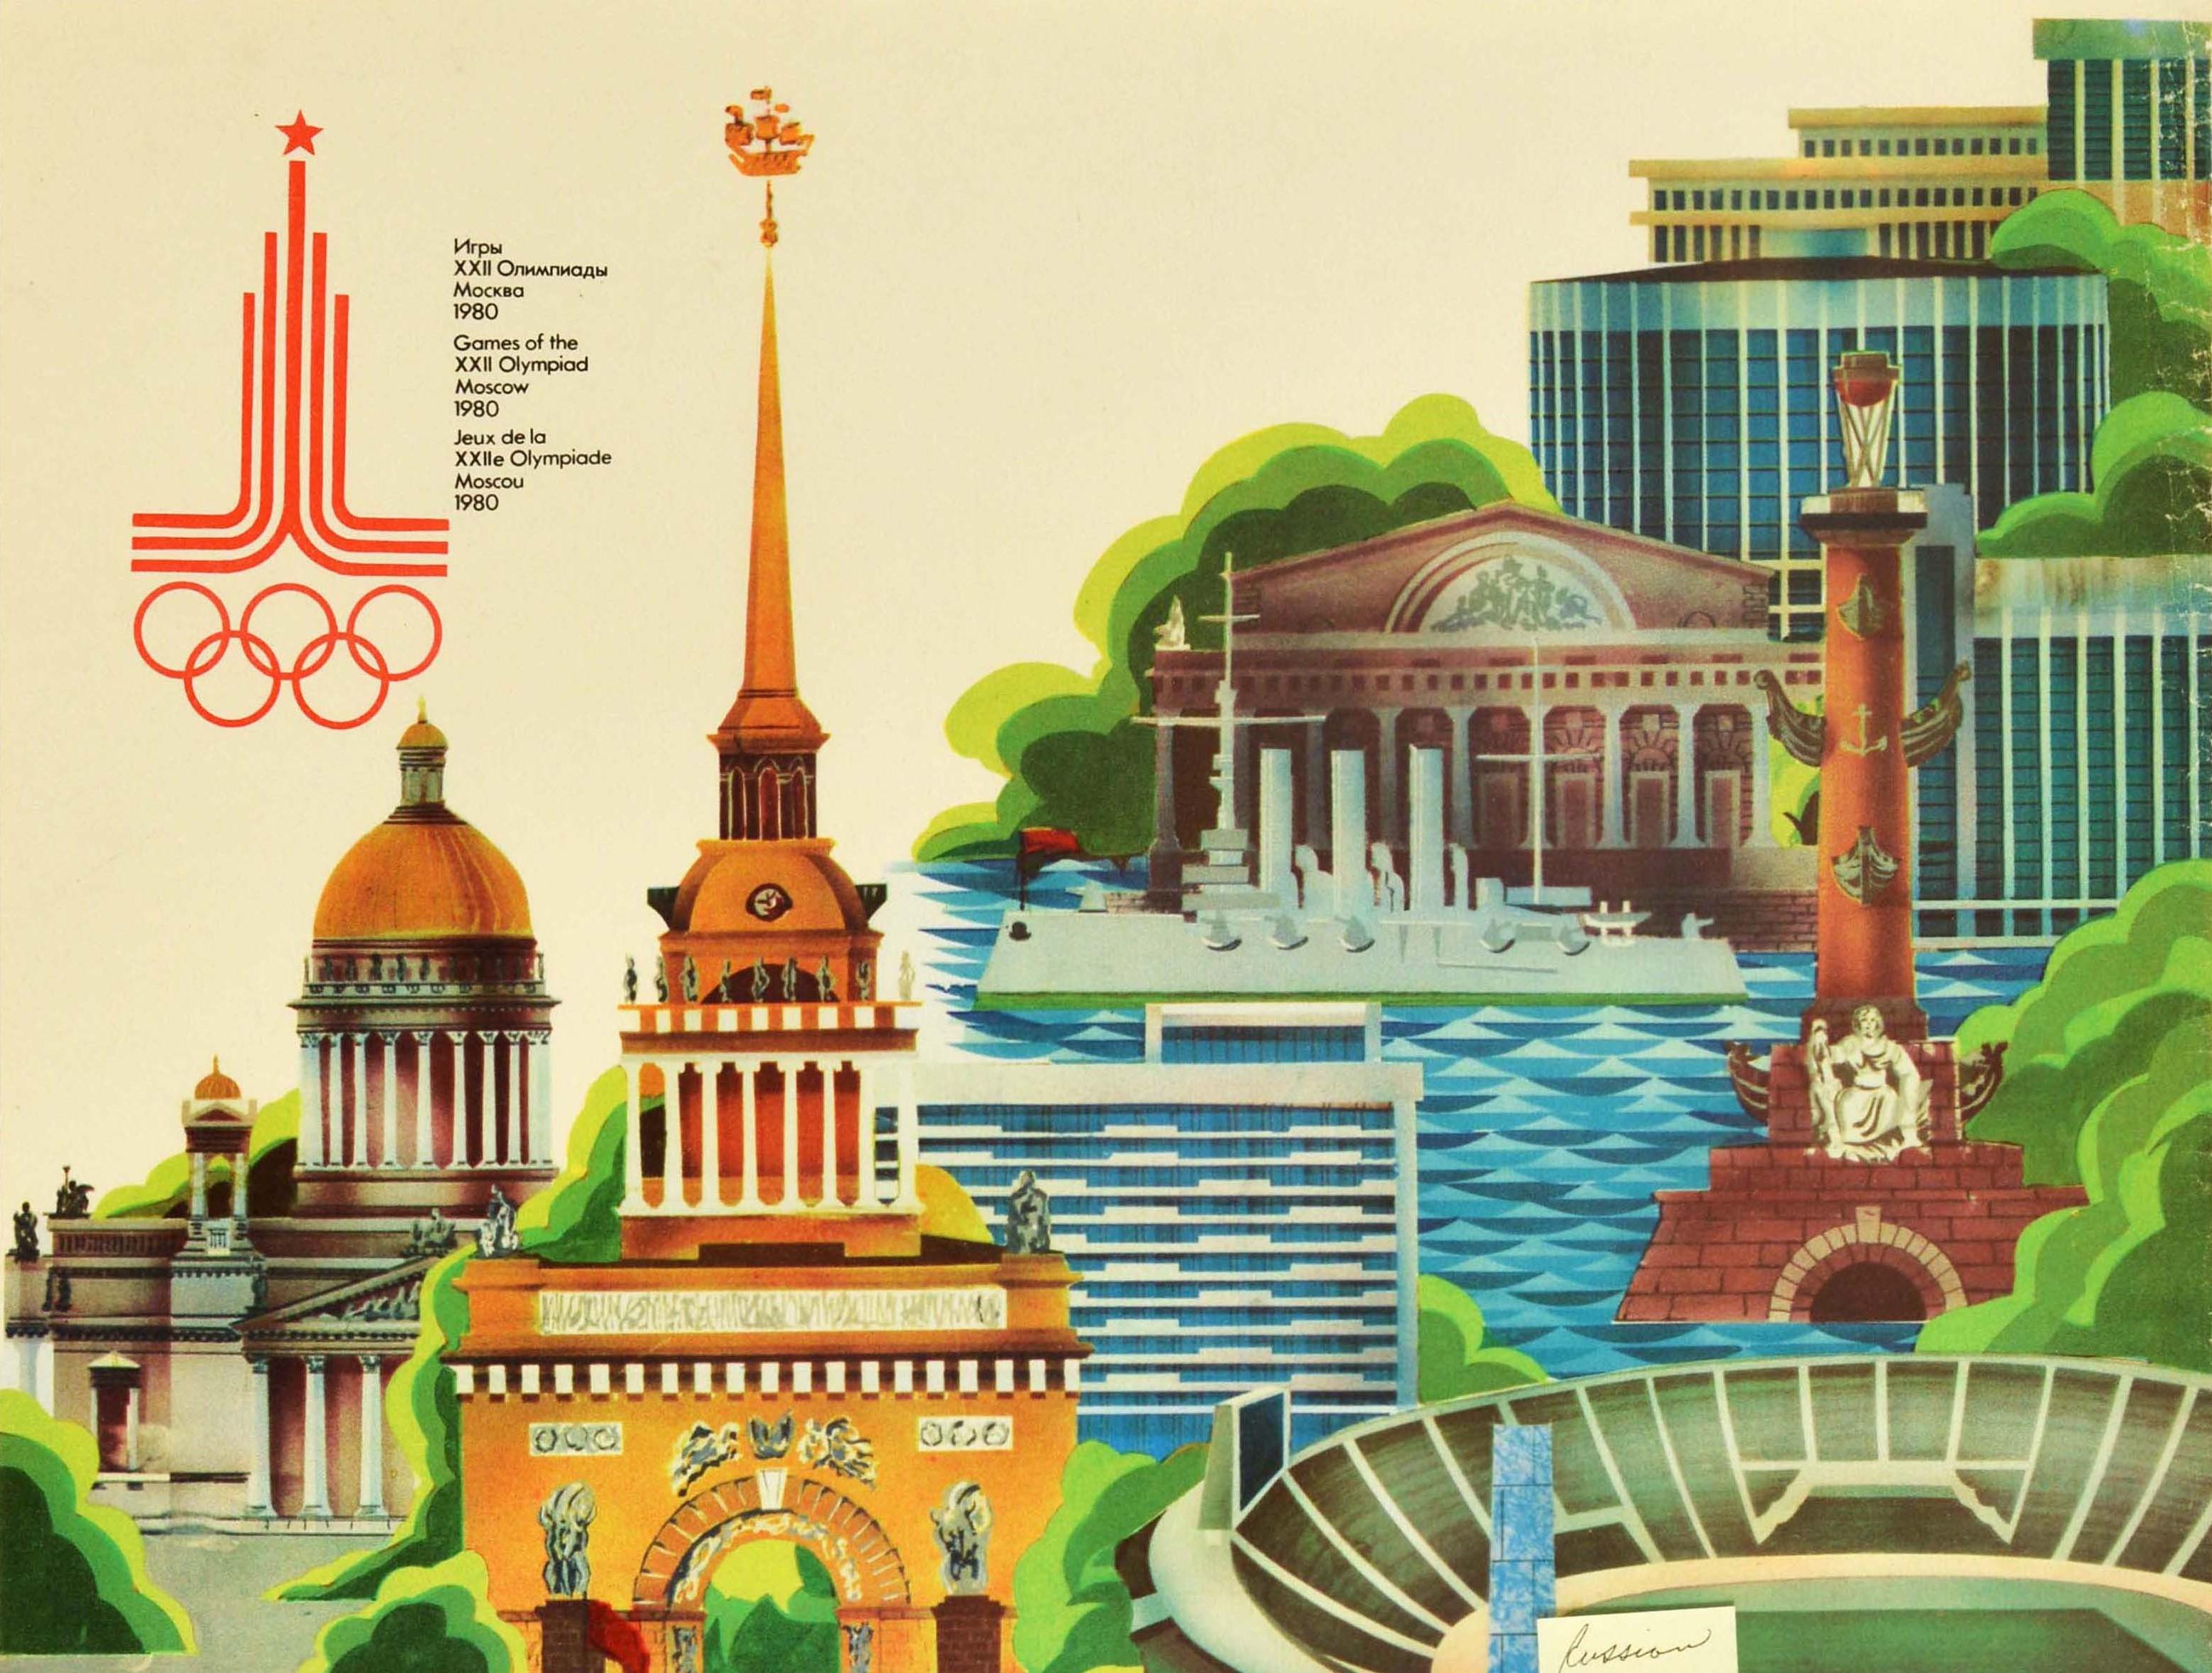 Affiche sportive soviétique vintage originale pour le tournoi final de football à Leningrad en Russie des 22e Jeux Olympiques d'été de la XXIIe Olympiade en 1980, organisés à Moscou en Russie. Elle présente une illustration colorée de divers